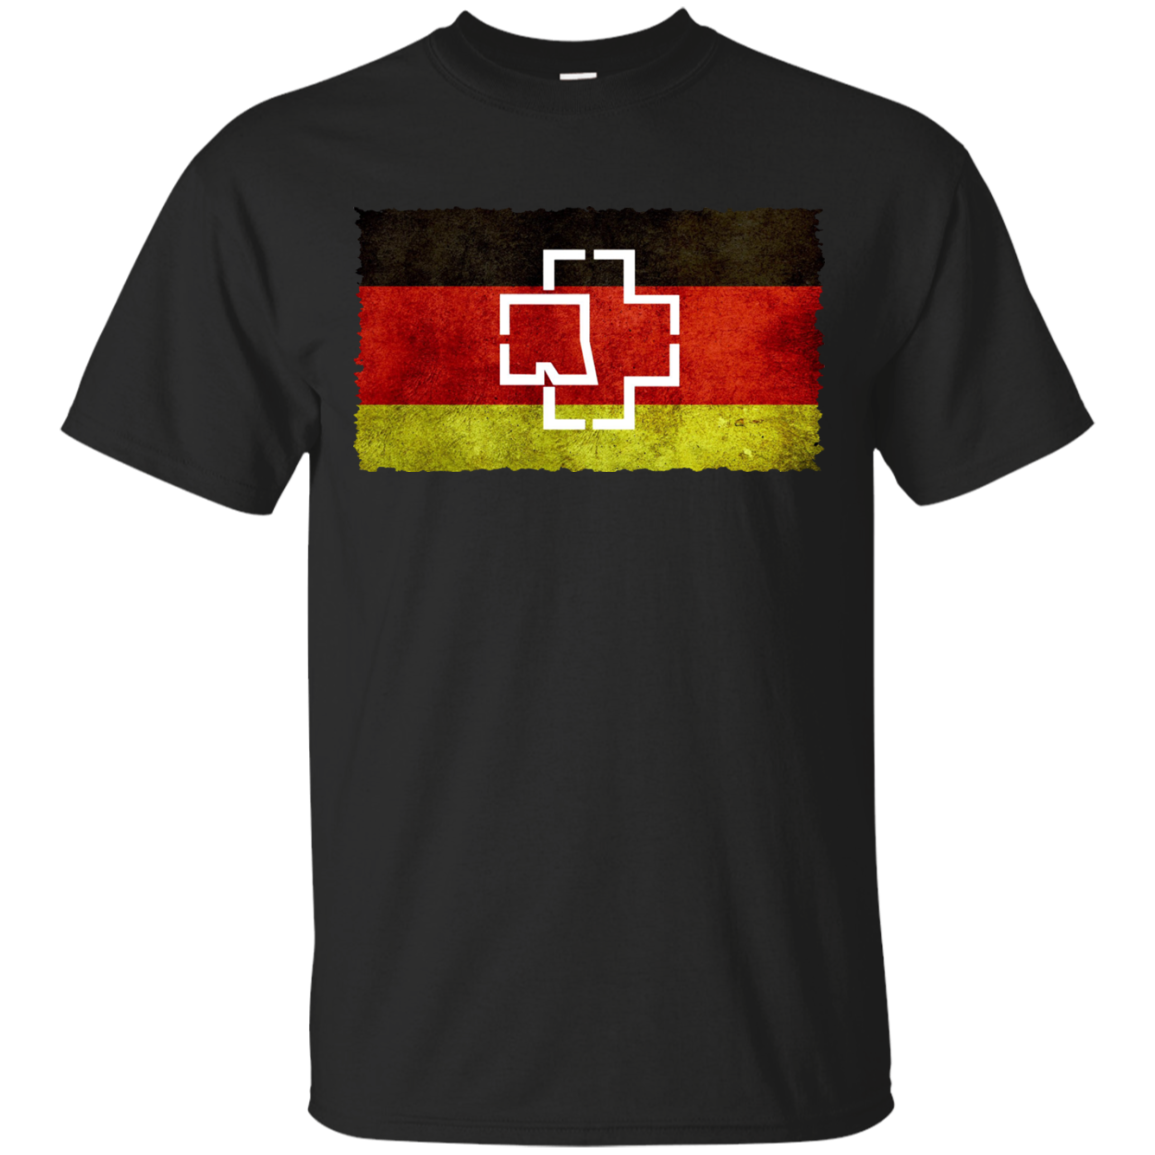 Rammstein Germany Shirts - Teesmiley